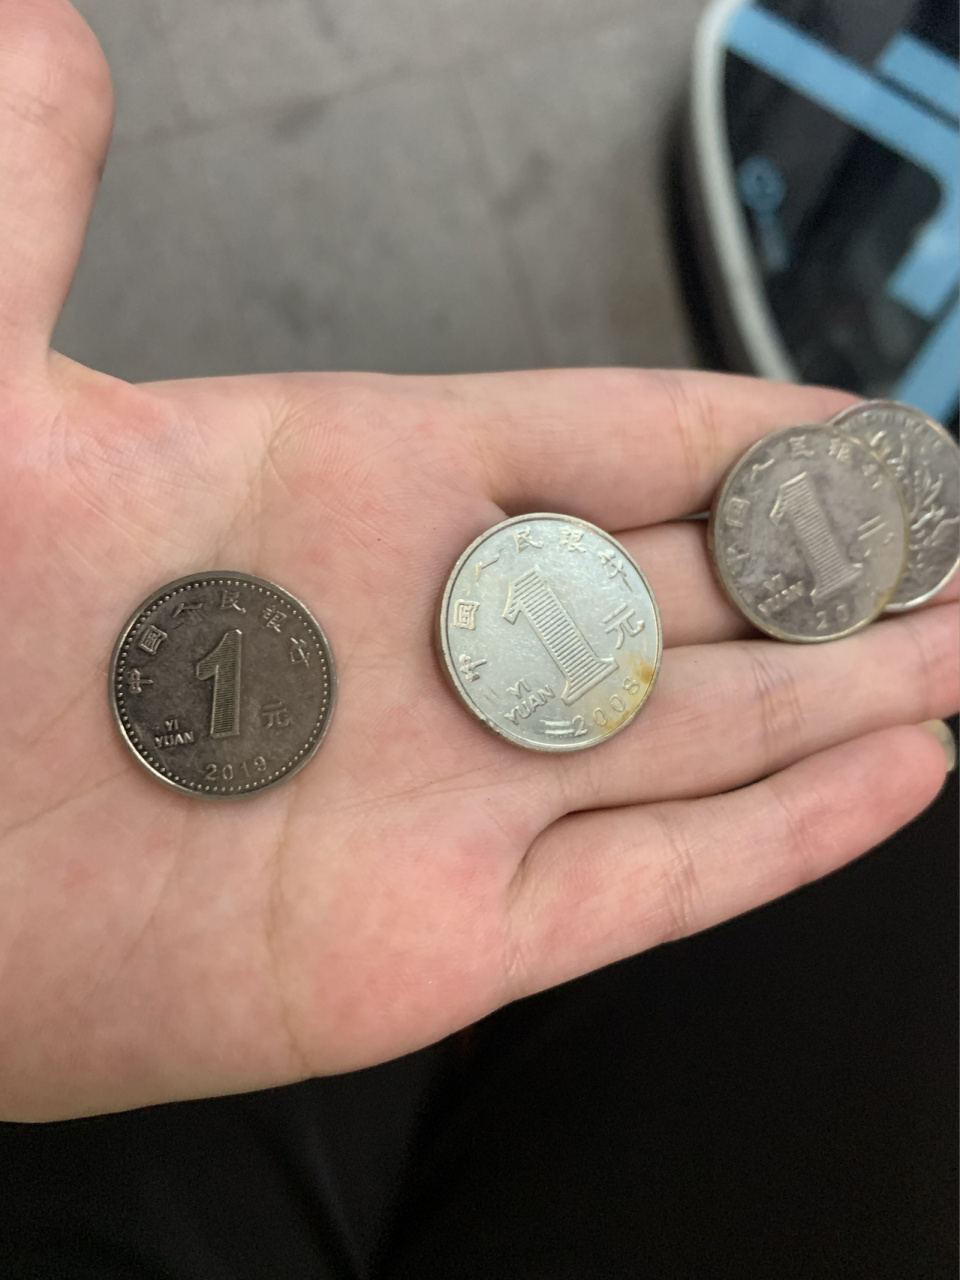 第一次看到,比一般的硬币要小一些,反面是一样的图案,正面不一样